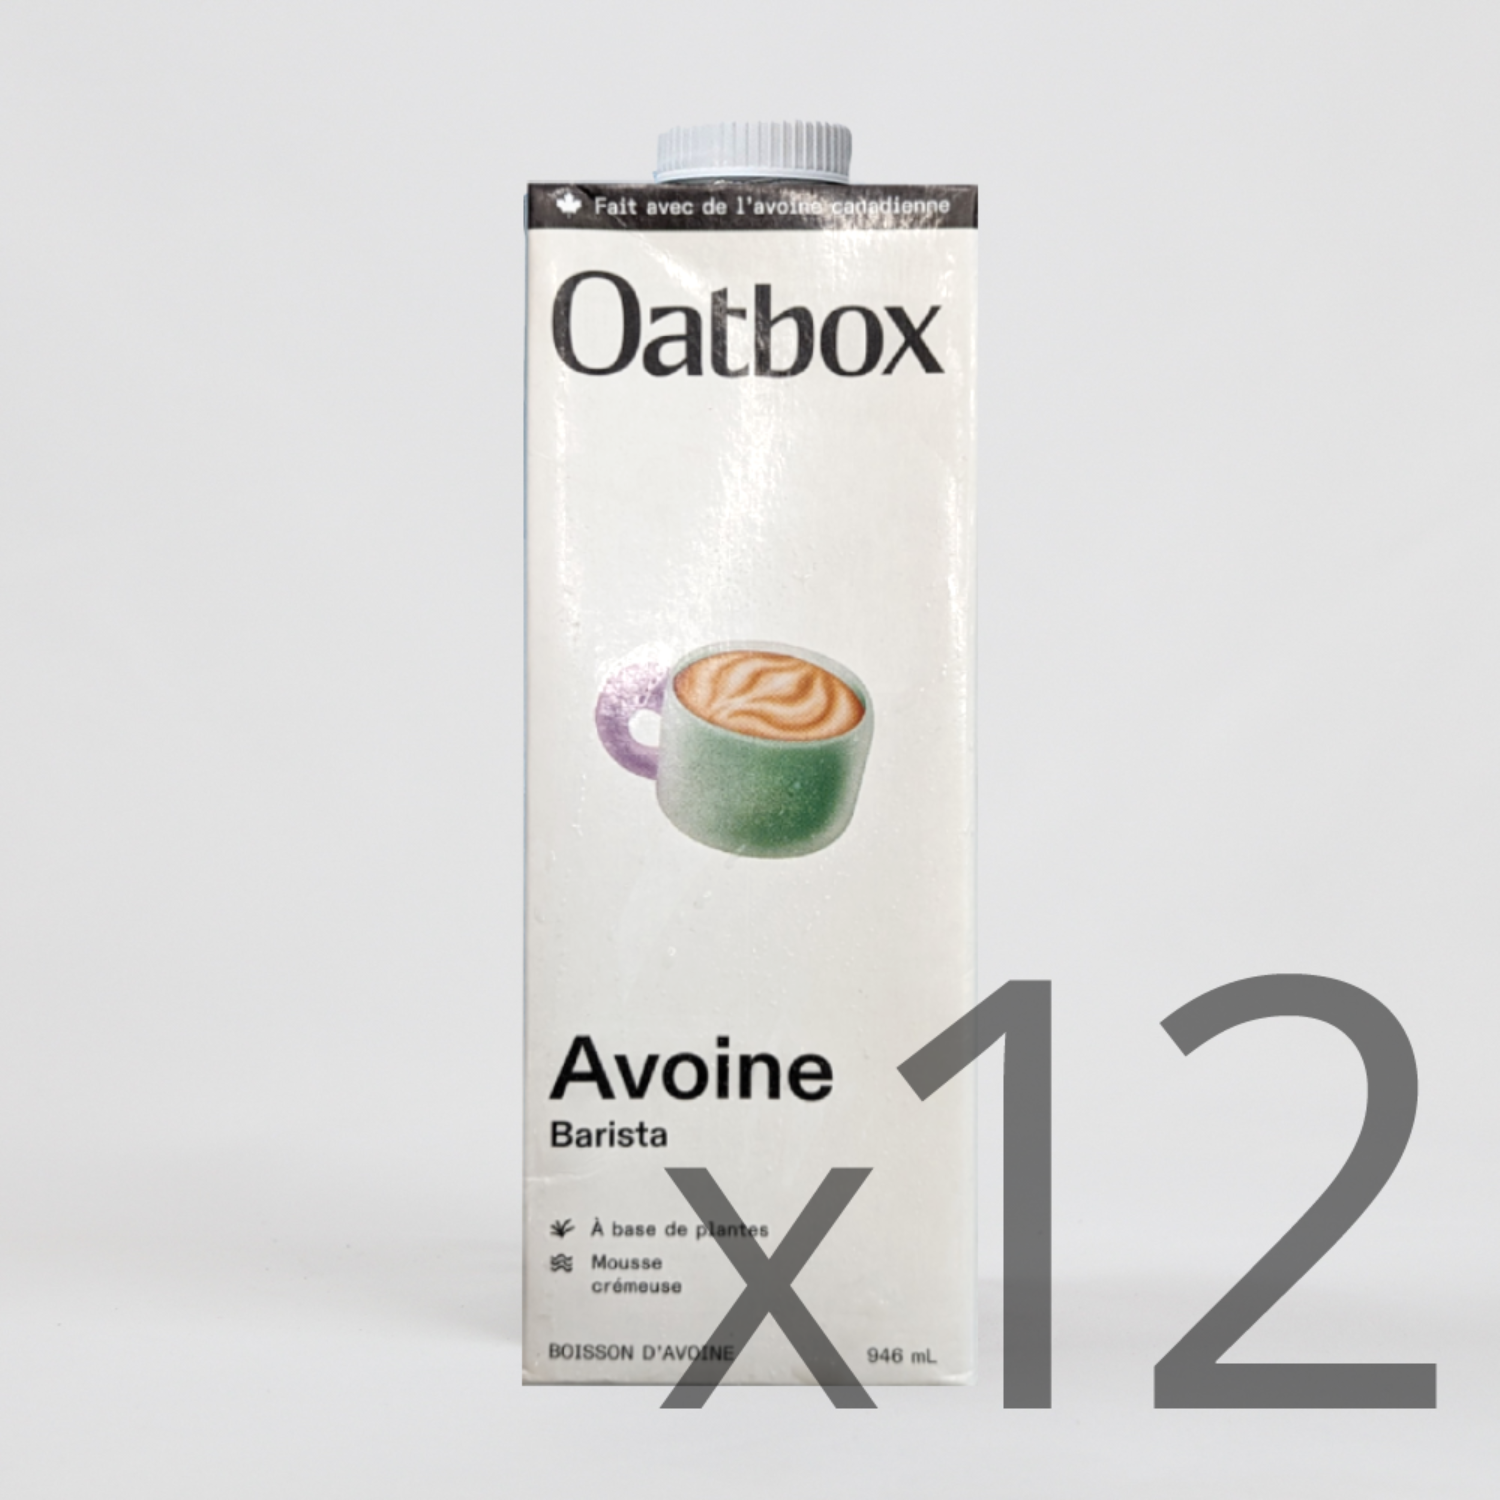 Boisson d'avoine Original – Oatbox